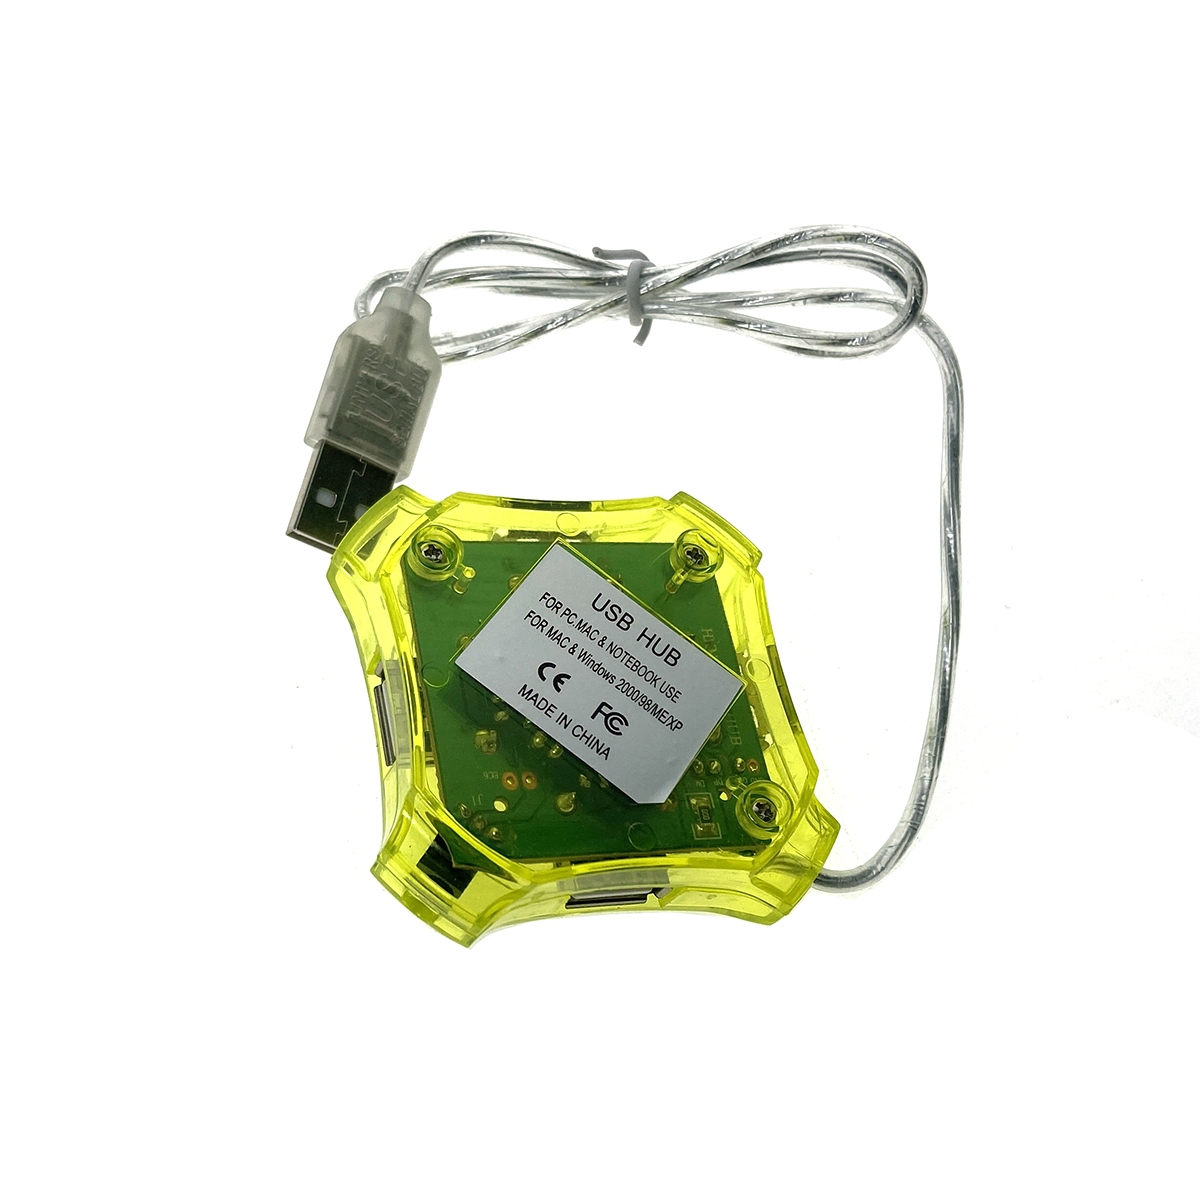 Разветвитель USB 2.0 - 4 порта, Eh420, желтый, длина кабеля 60см, хаб Espada